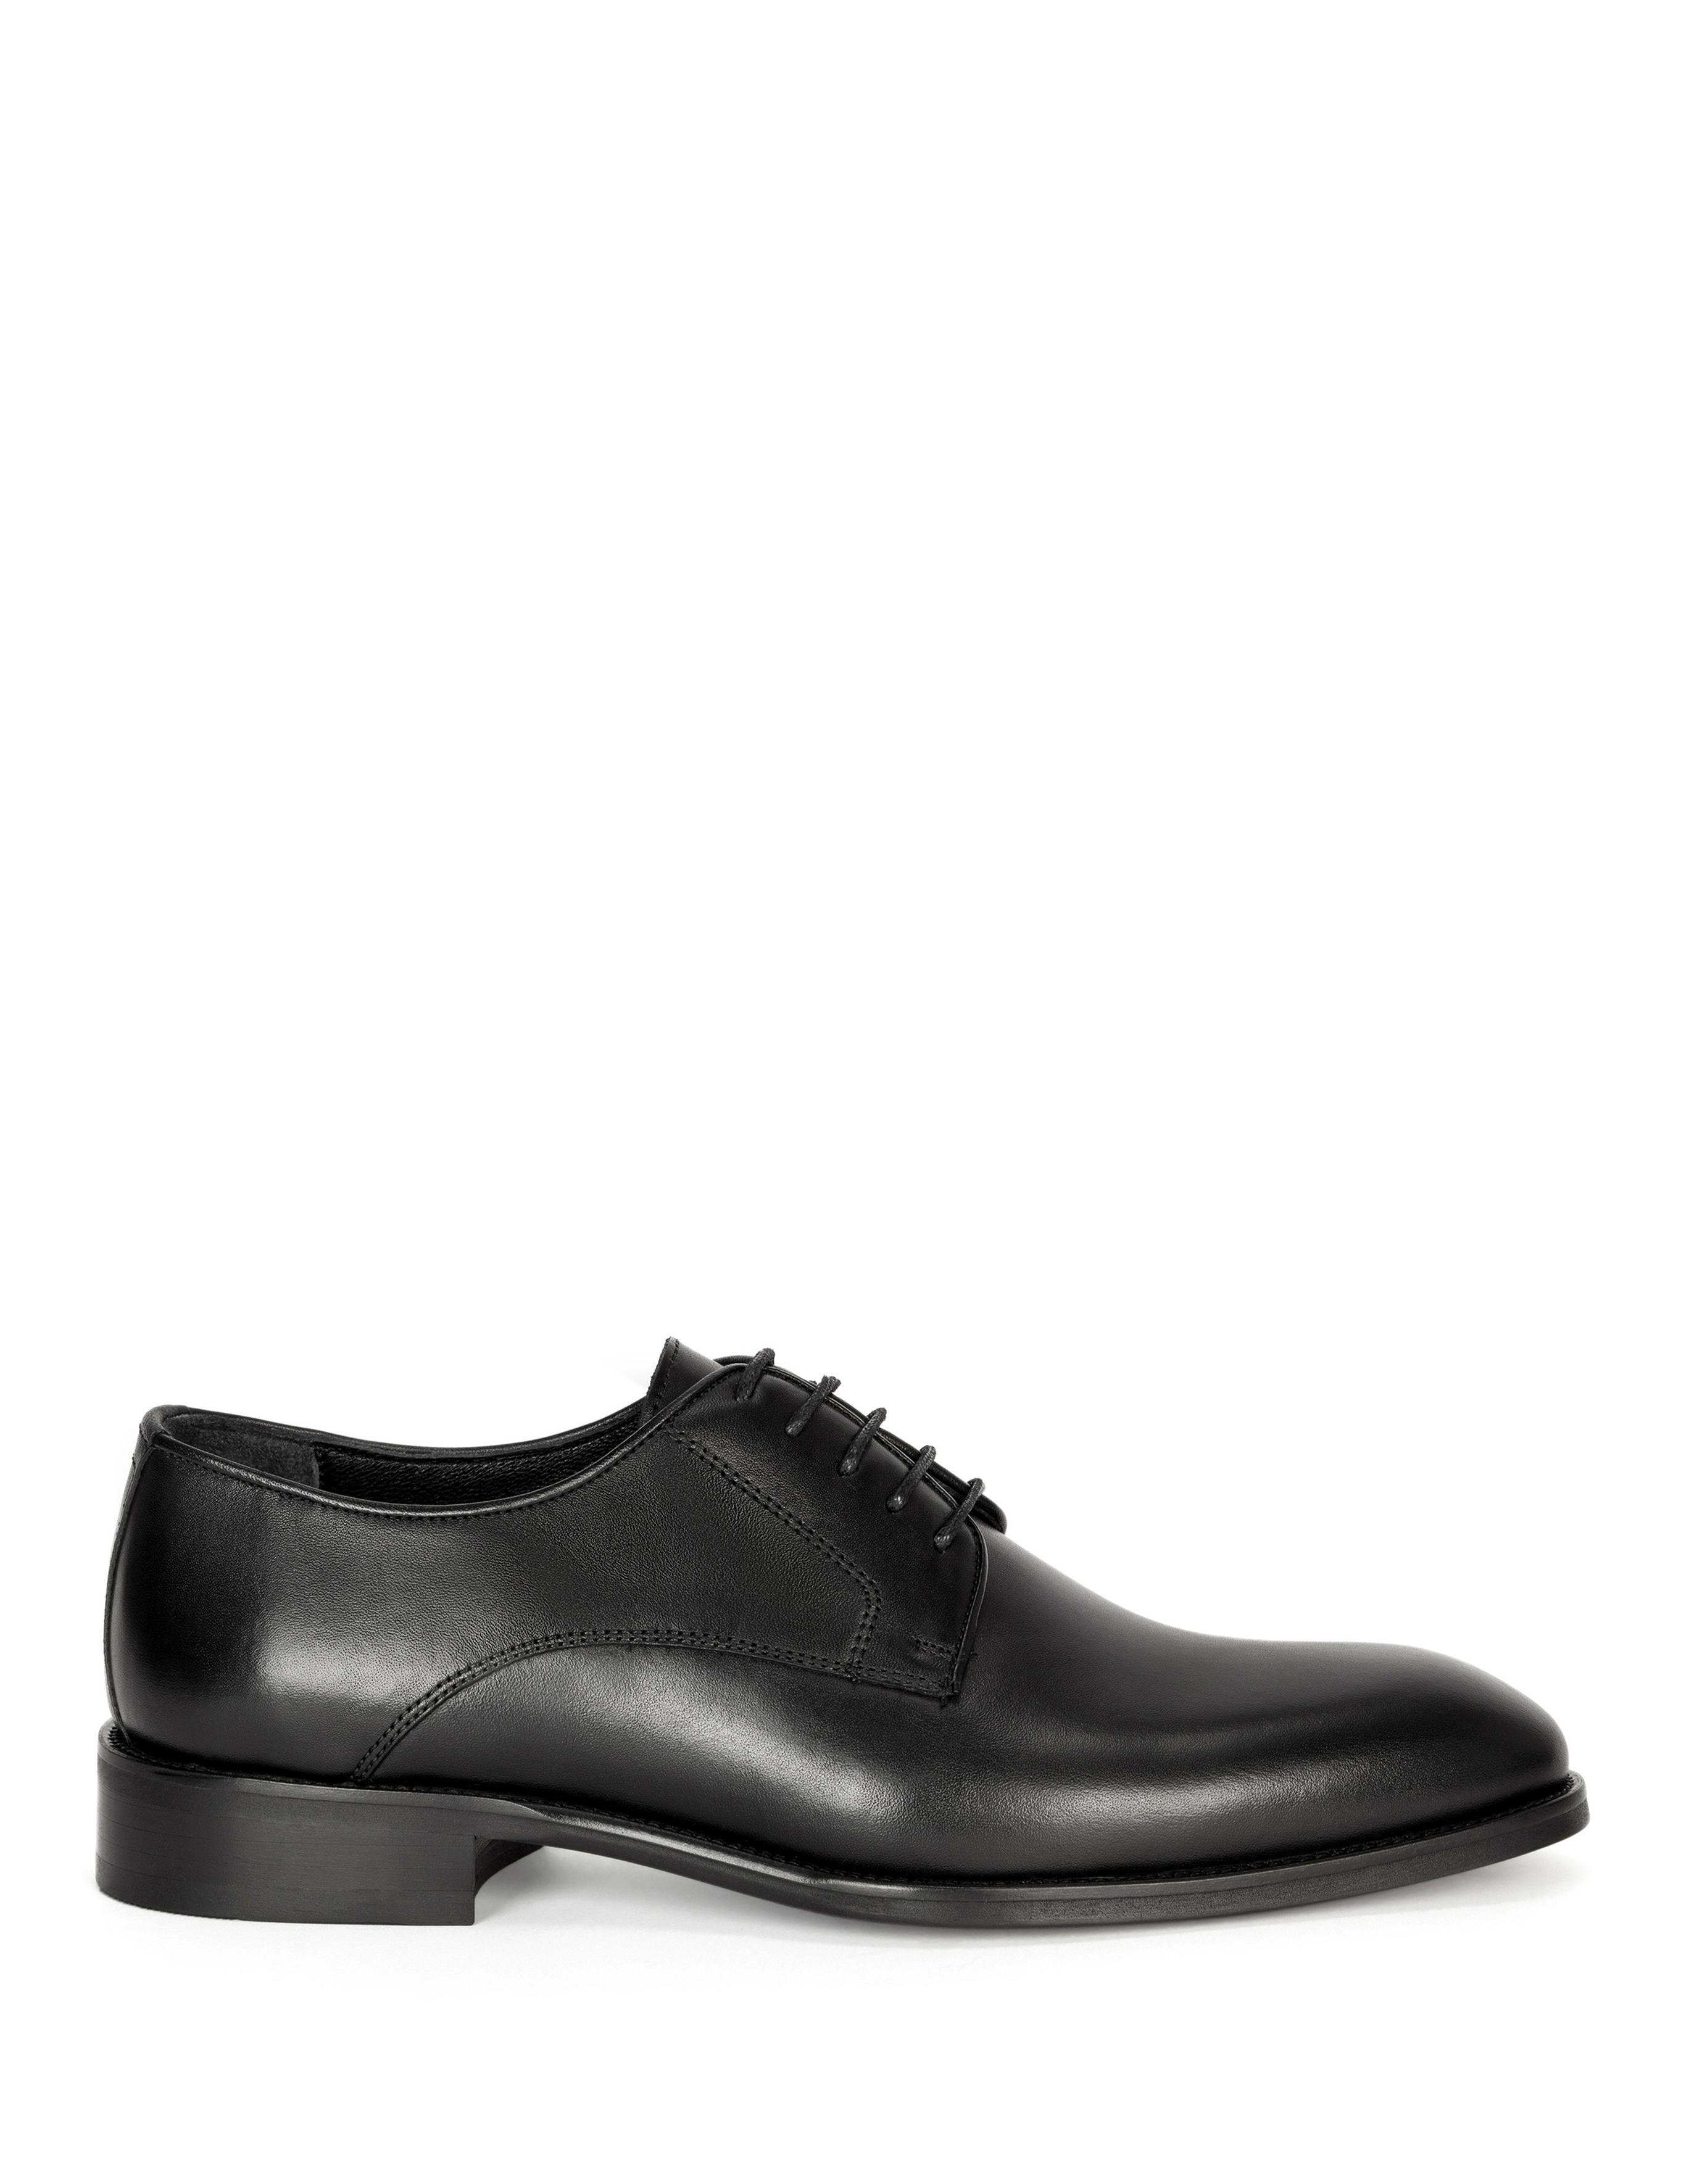 Siyah Klasik Ayakkabı - 50276620028